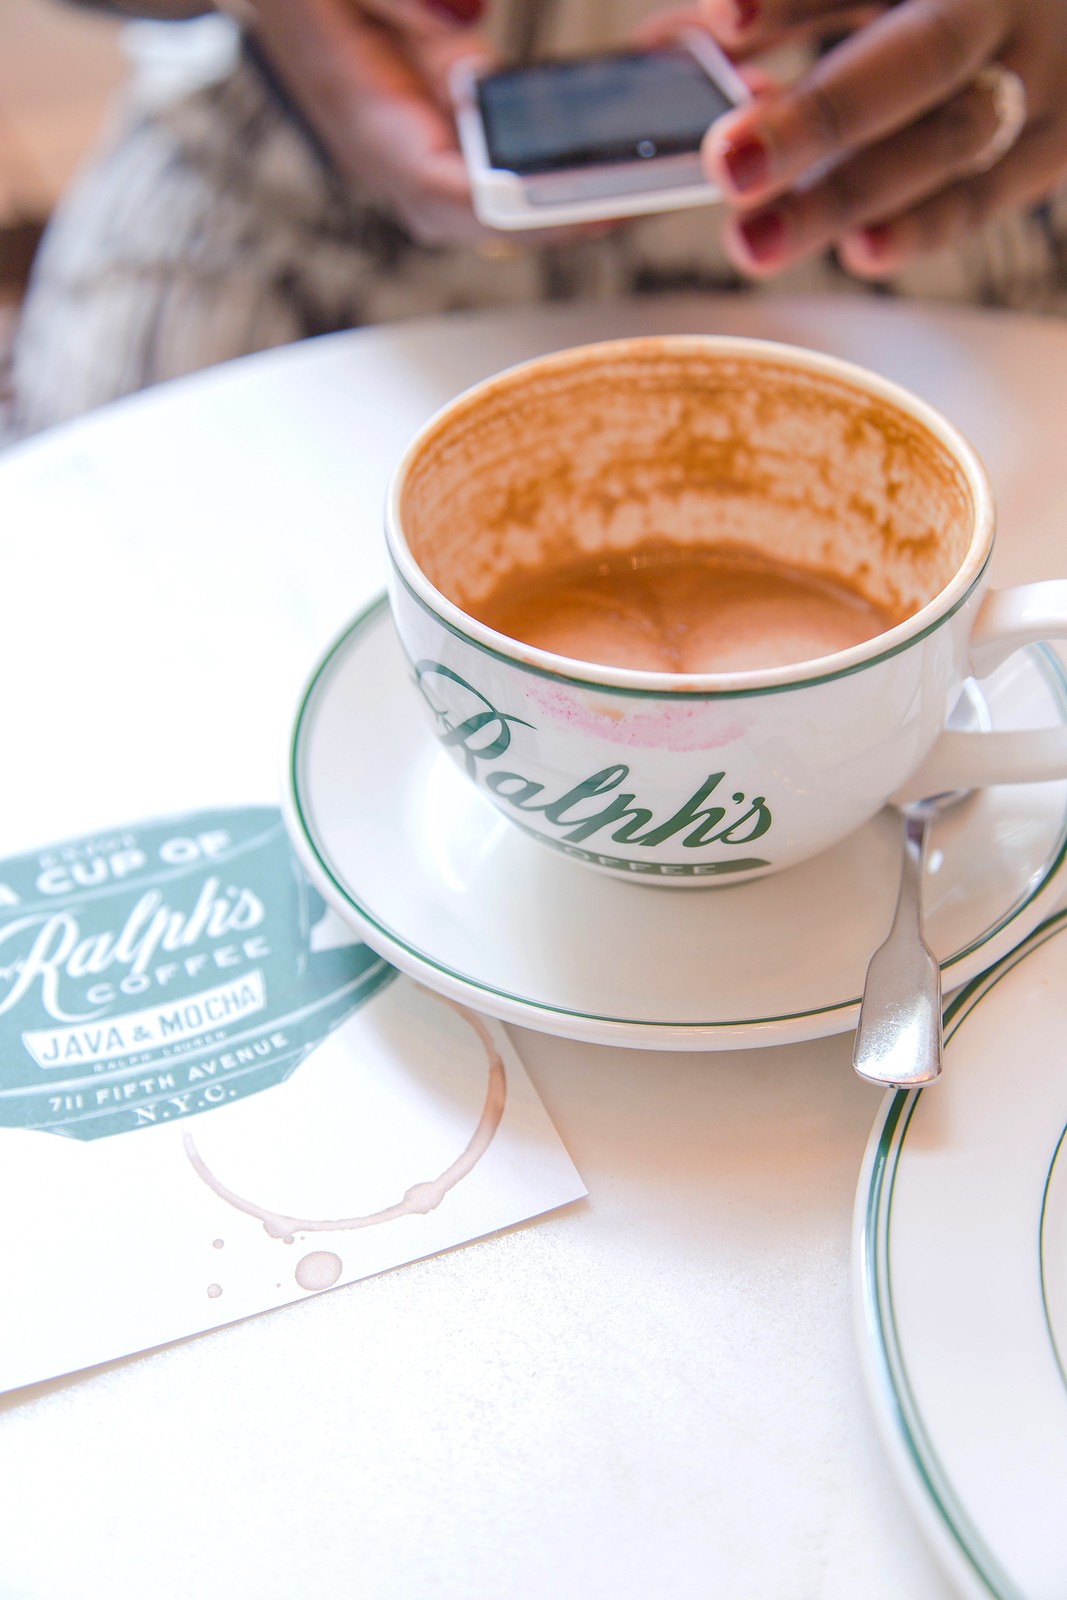 Ralph's Coffee, NYC